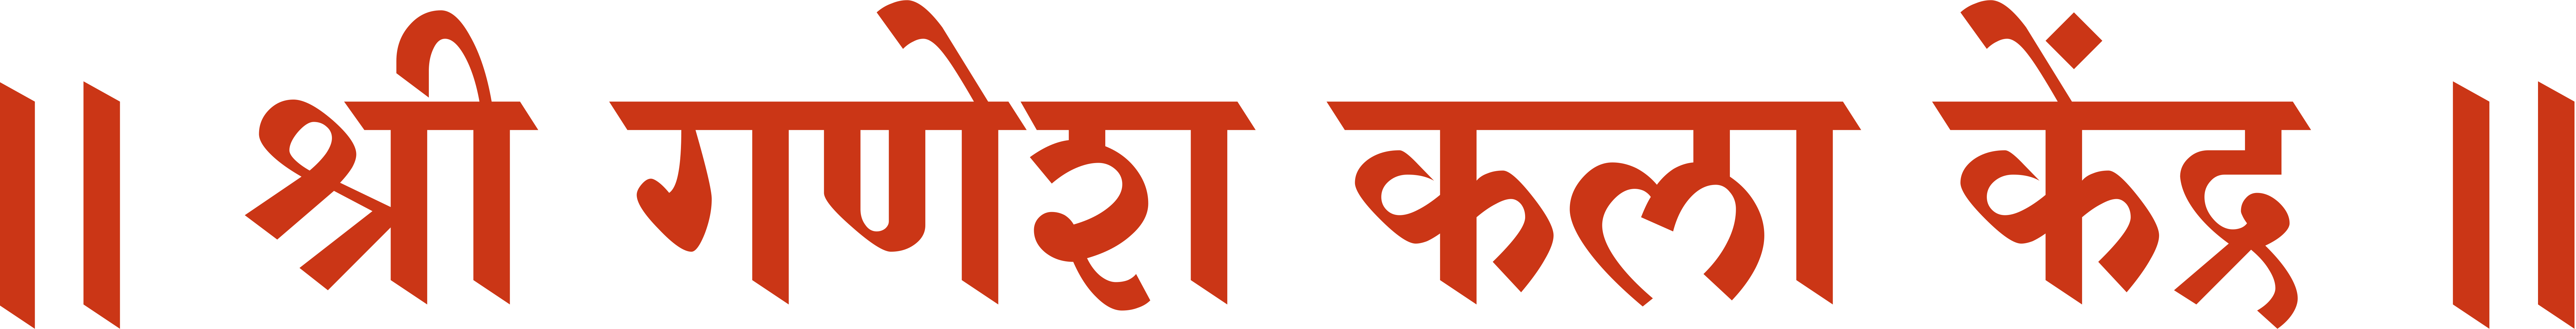 Sattvik Ganesh